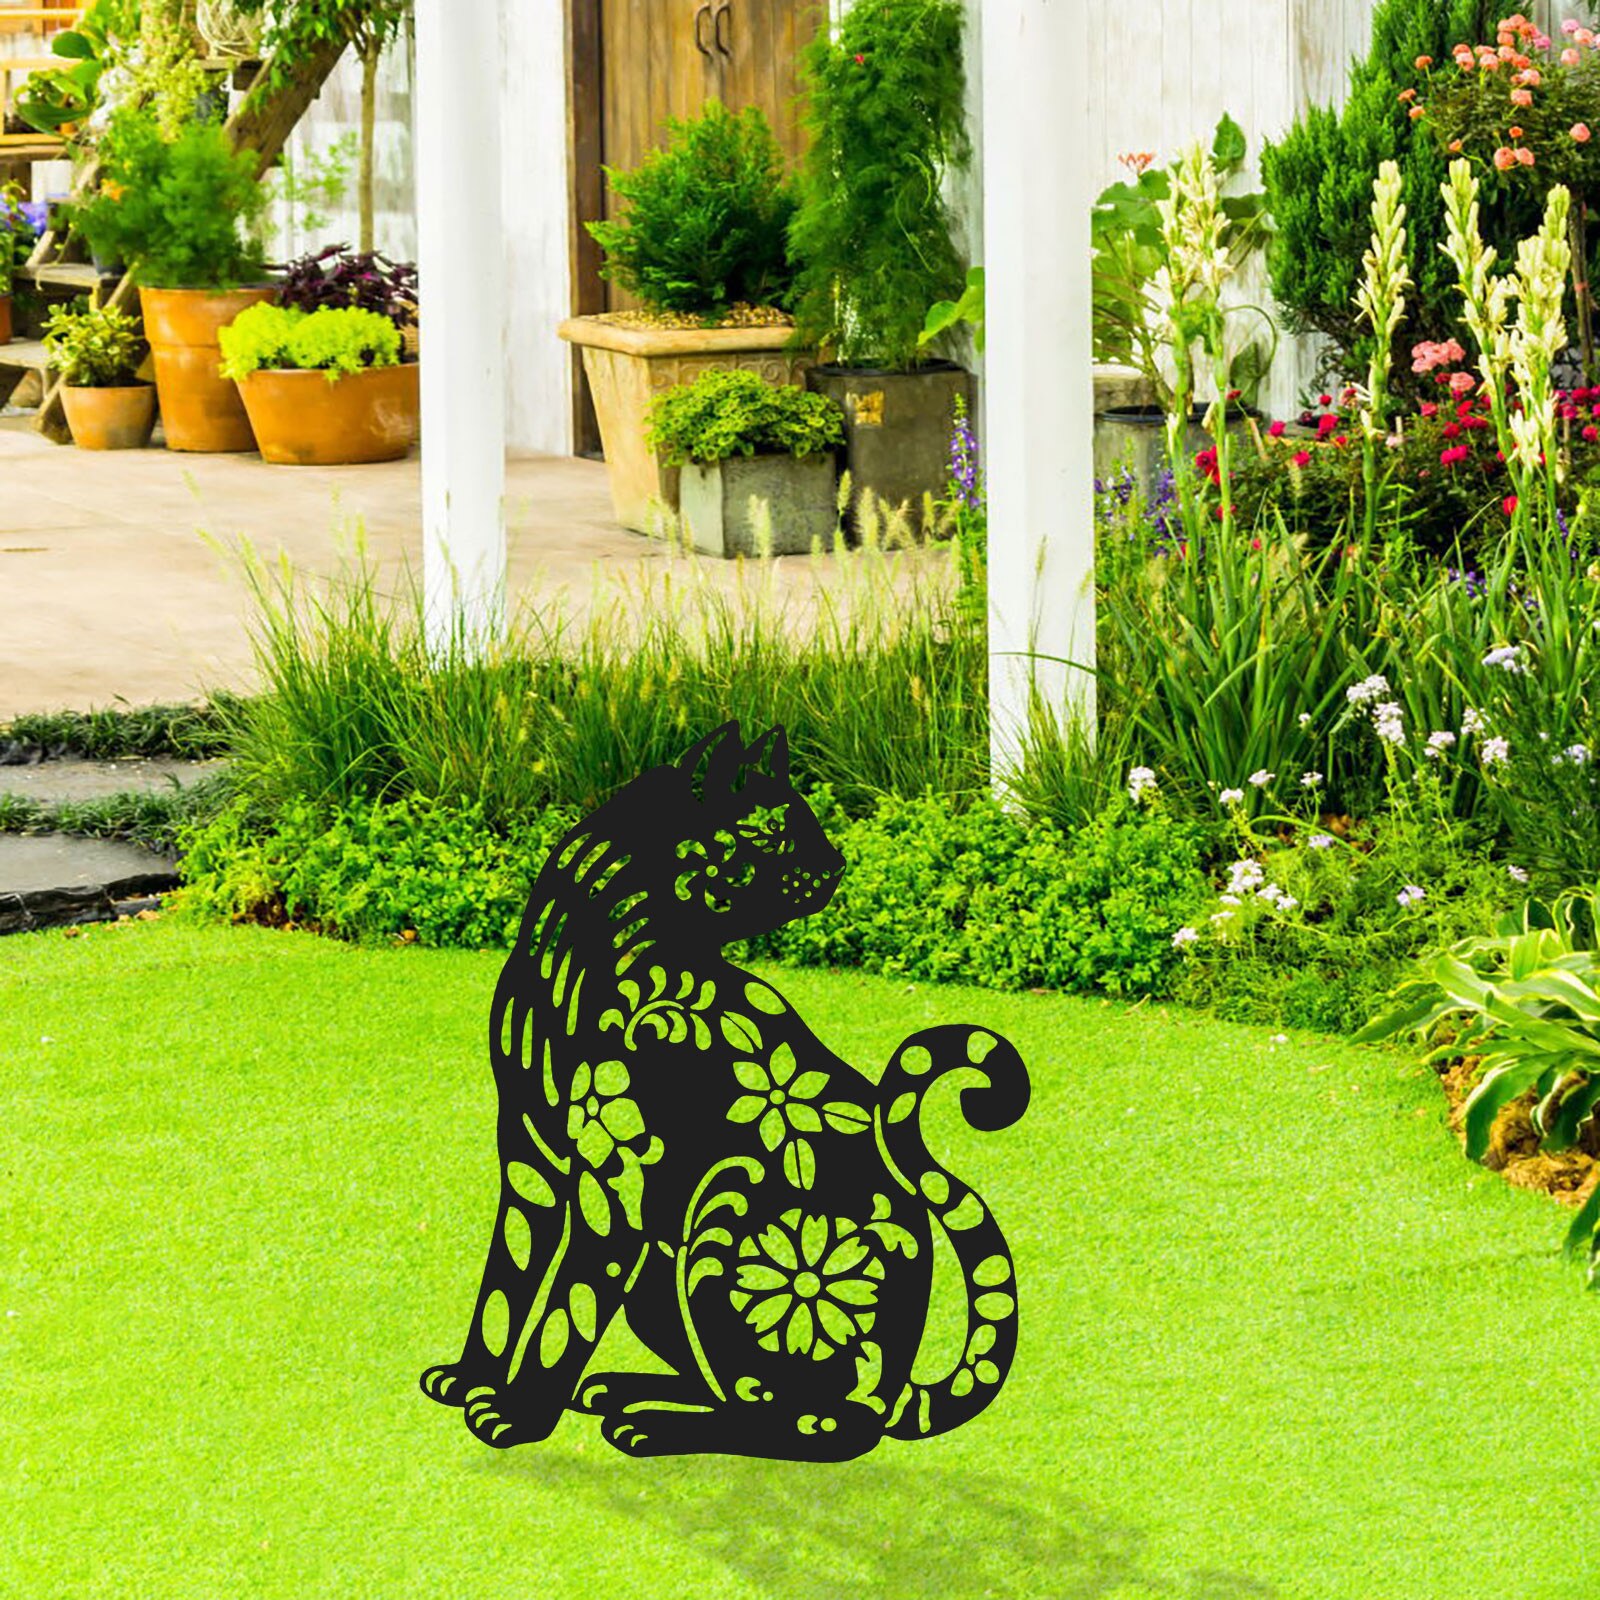 Yard Art Kat Konijn Stakes Tuin Inserts Acryl Animal Hollow Inserts Yard Decoratie Tuin Decoratieve Outdoor Accessoires